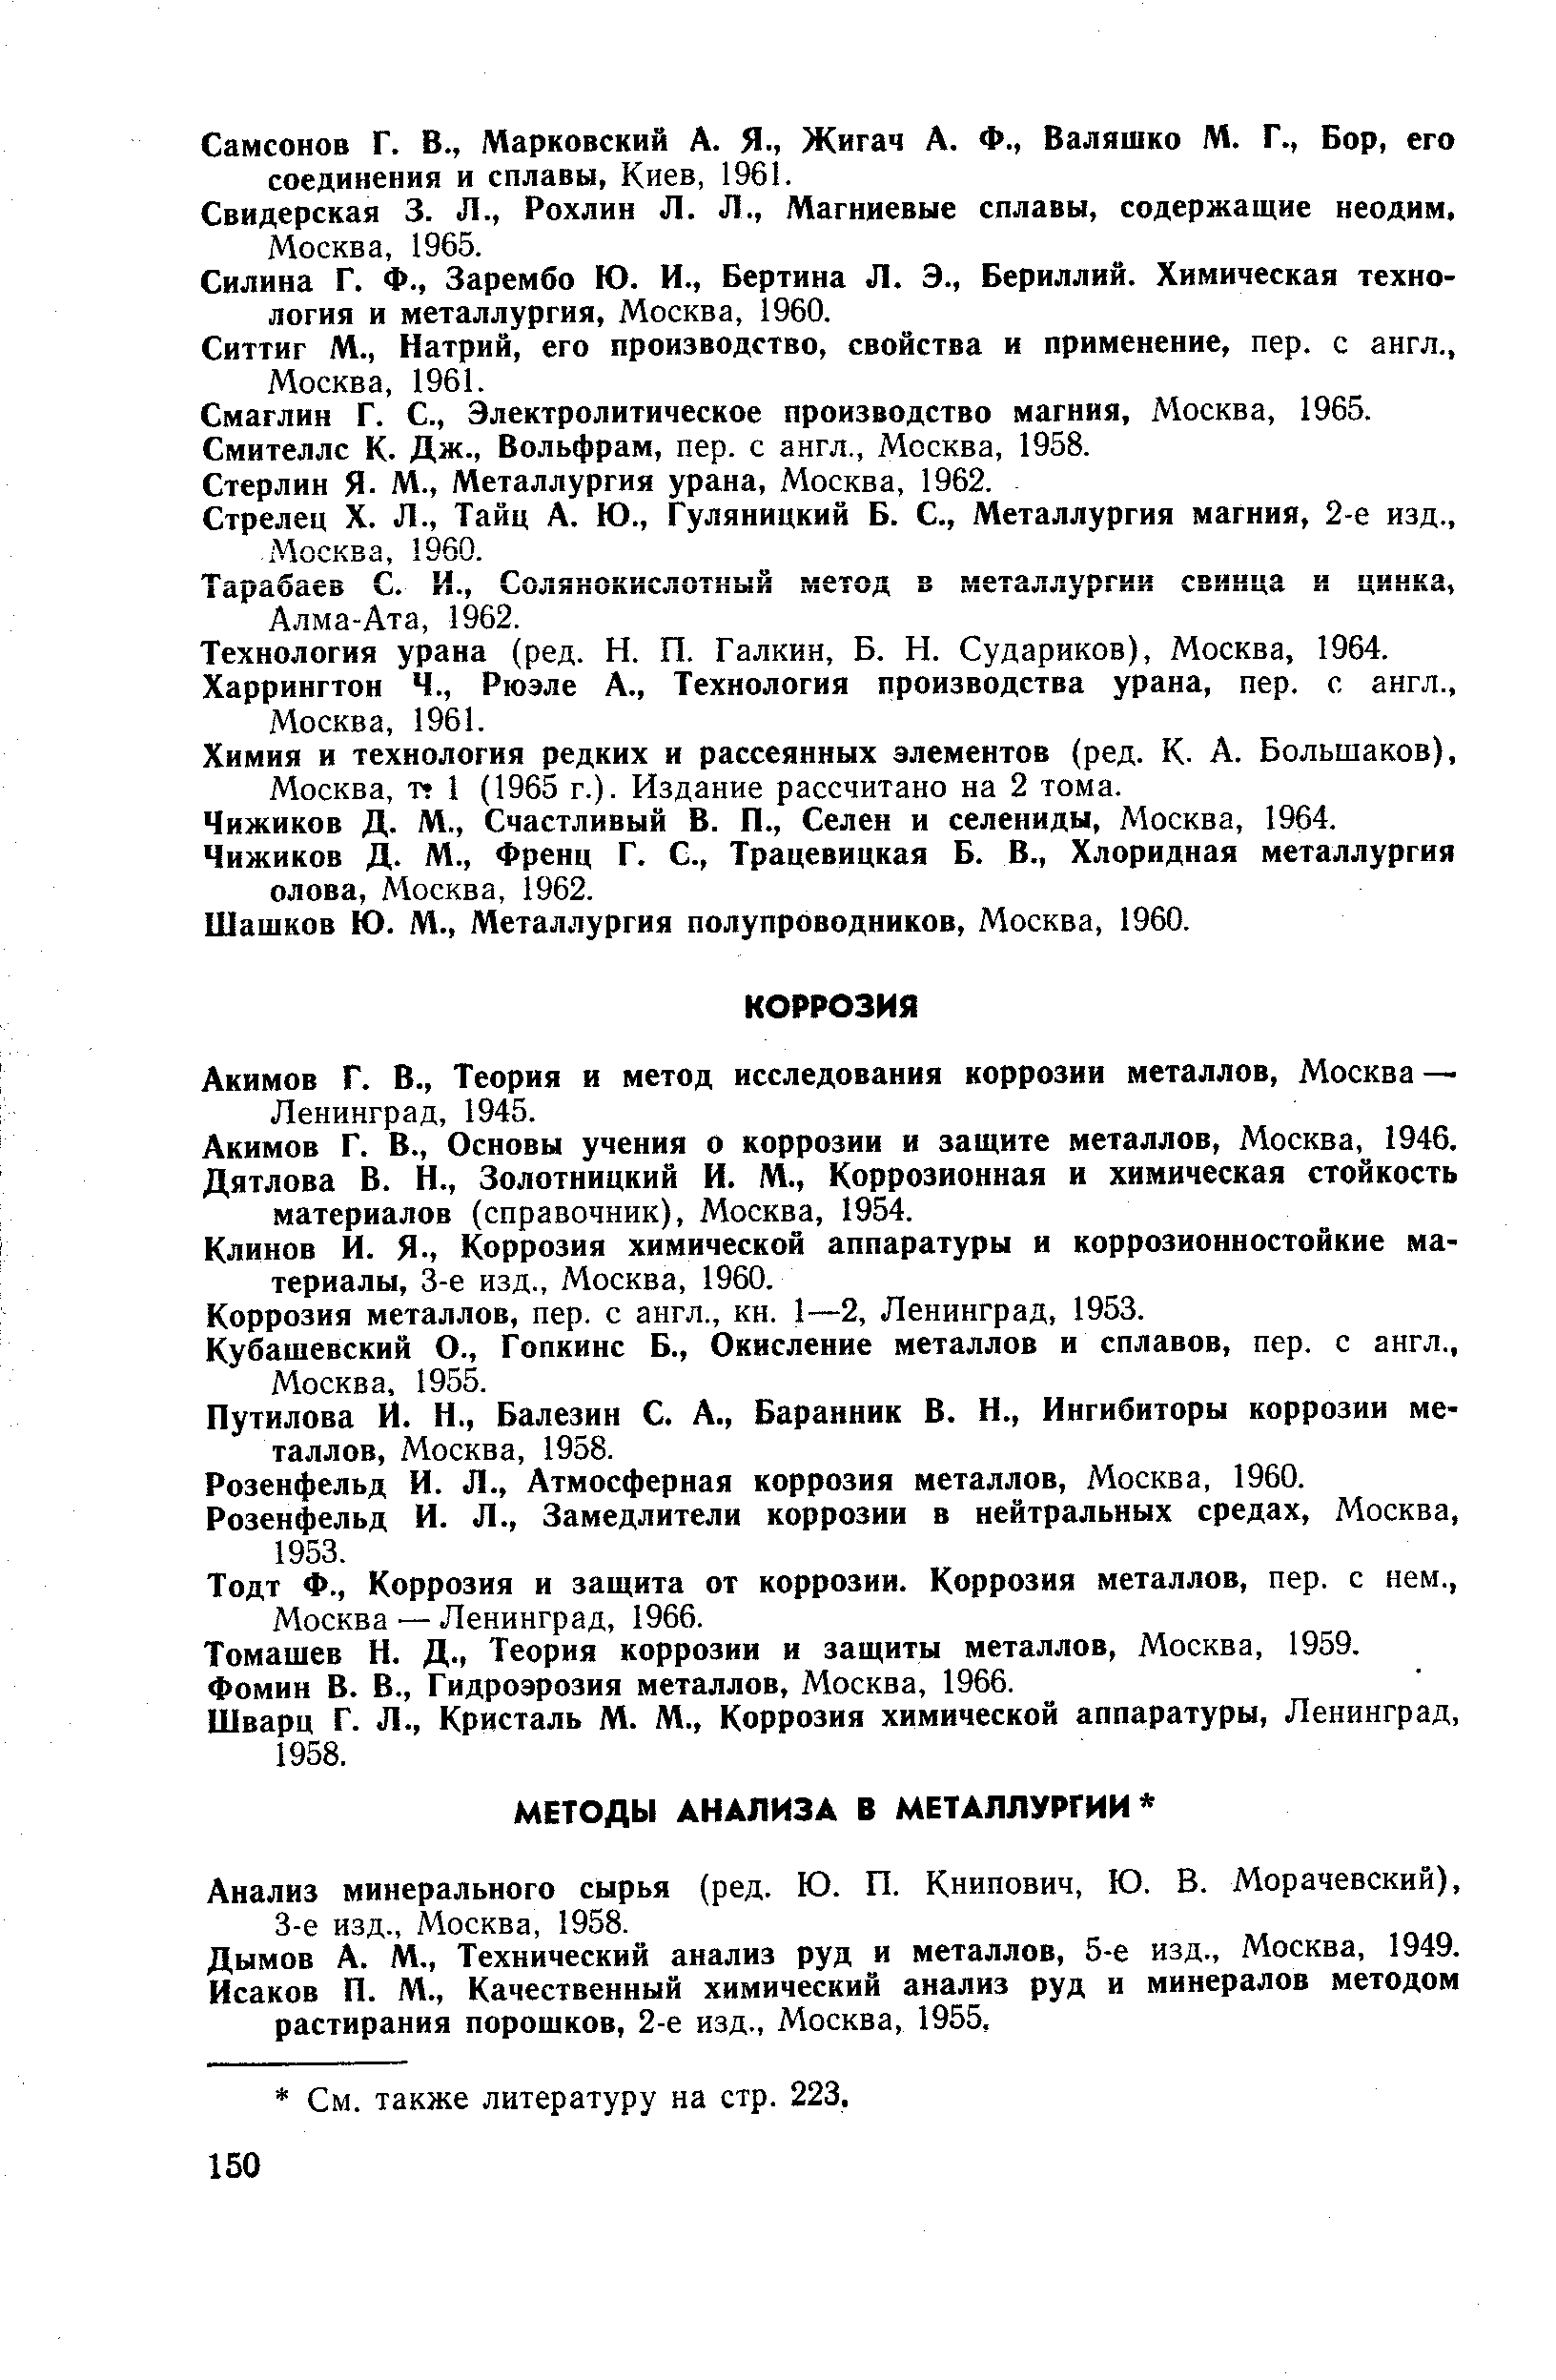 Дымов А. М., Технический анализ руд и металлов, 5-е изд., Москва, 1949.